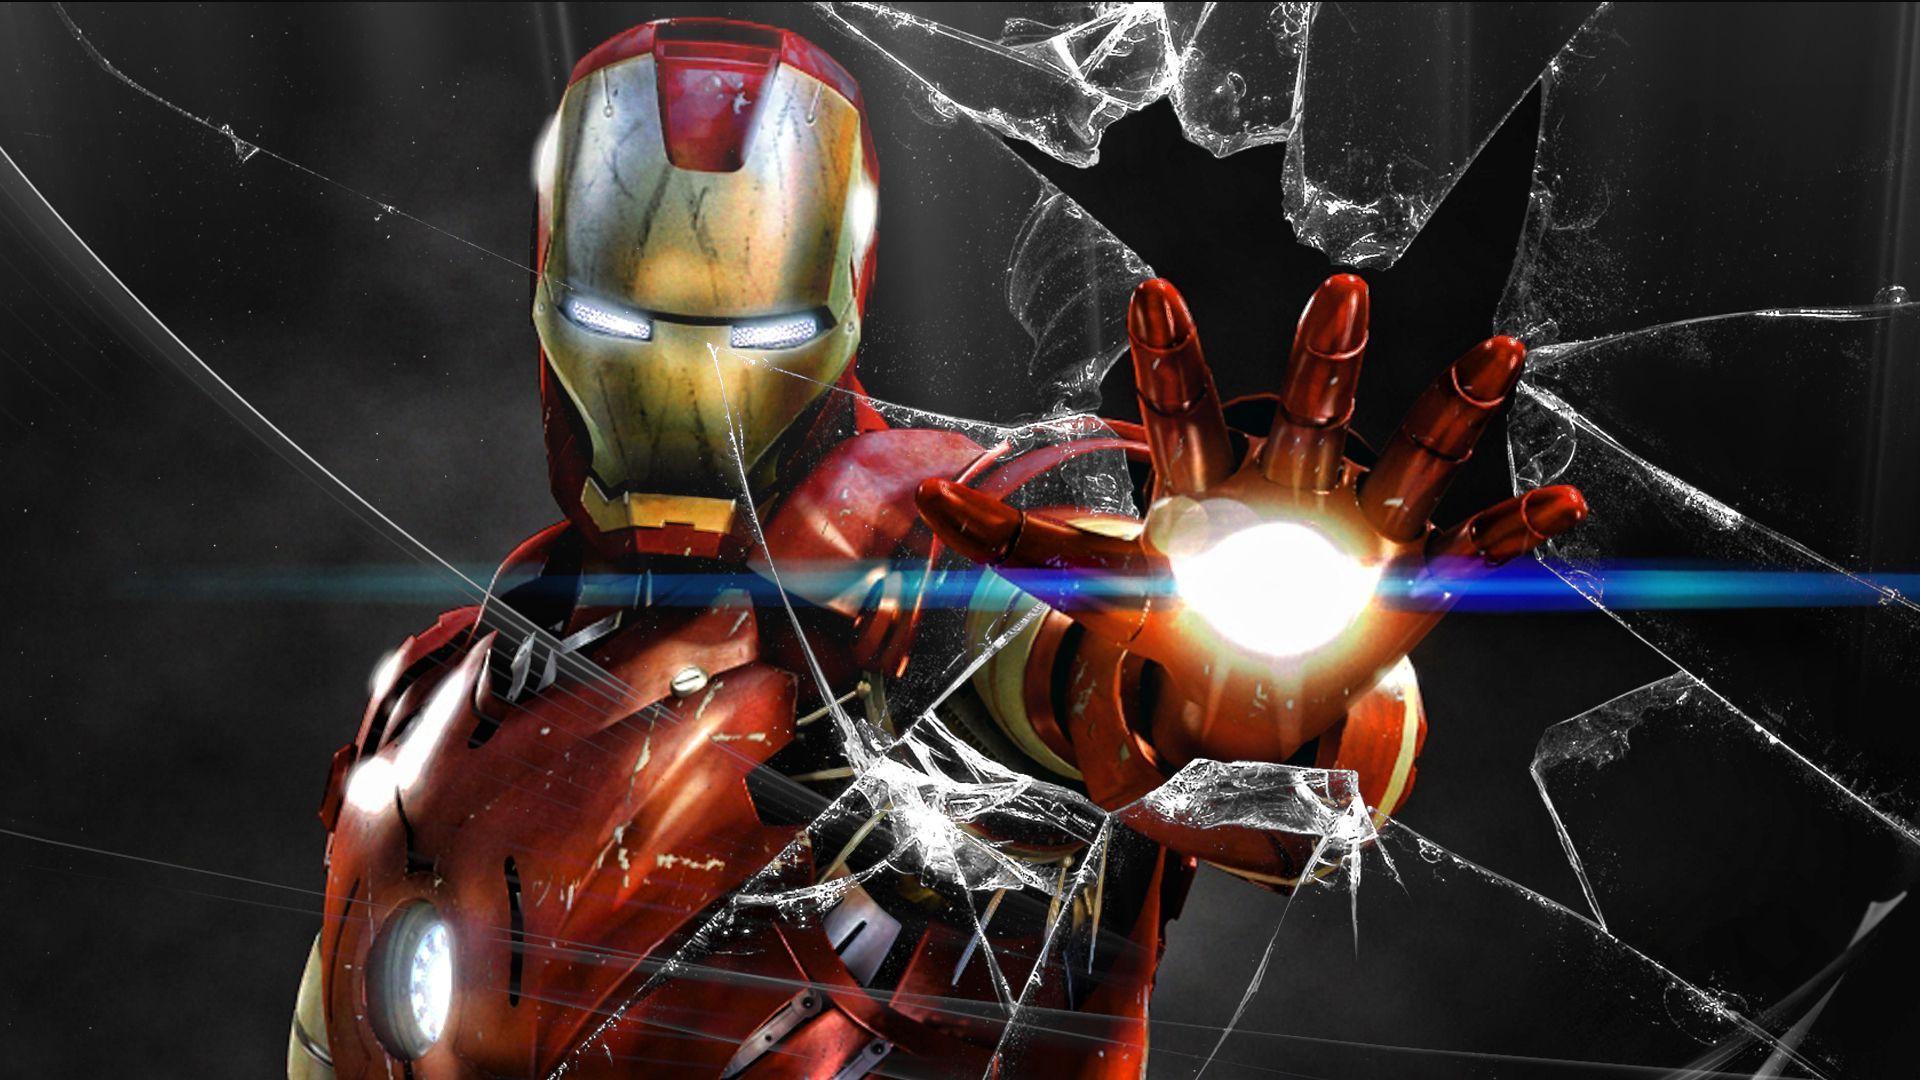 Hãy cùng đắm mình trong không gian hoành tráng của Tony Stark Iron Man với bộ sưu tập hình nền kiệt tác đầy sống động và tinh tế! Tận hưởng trải nghiệm đắm chìm trong những khung cảnh đặc biệt của nhân vật được yêu thích nhất của chúng ta với chất lượng 4K sắc nét, tạo nên sự hiệu quả tuyệt vời cho màn hình máy tính của bạn.